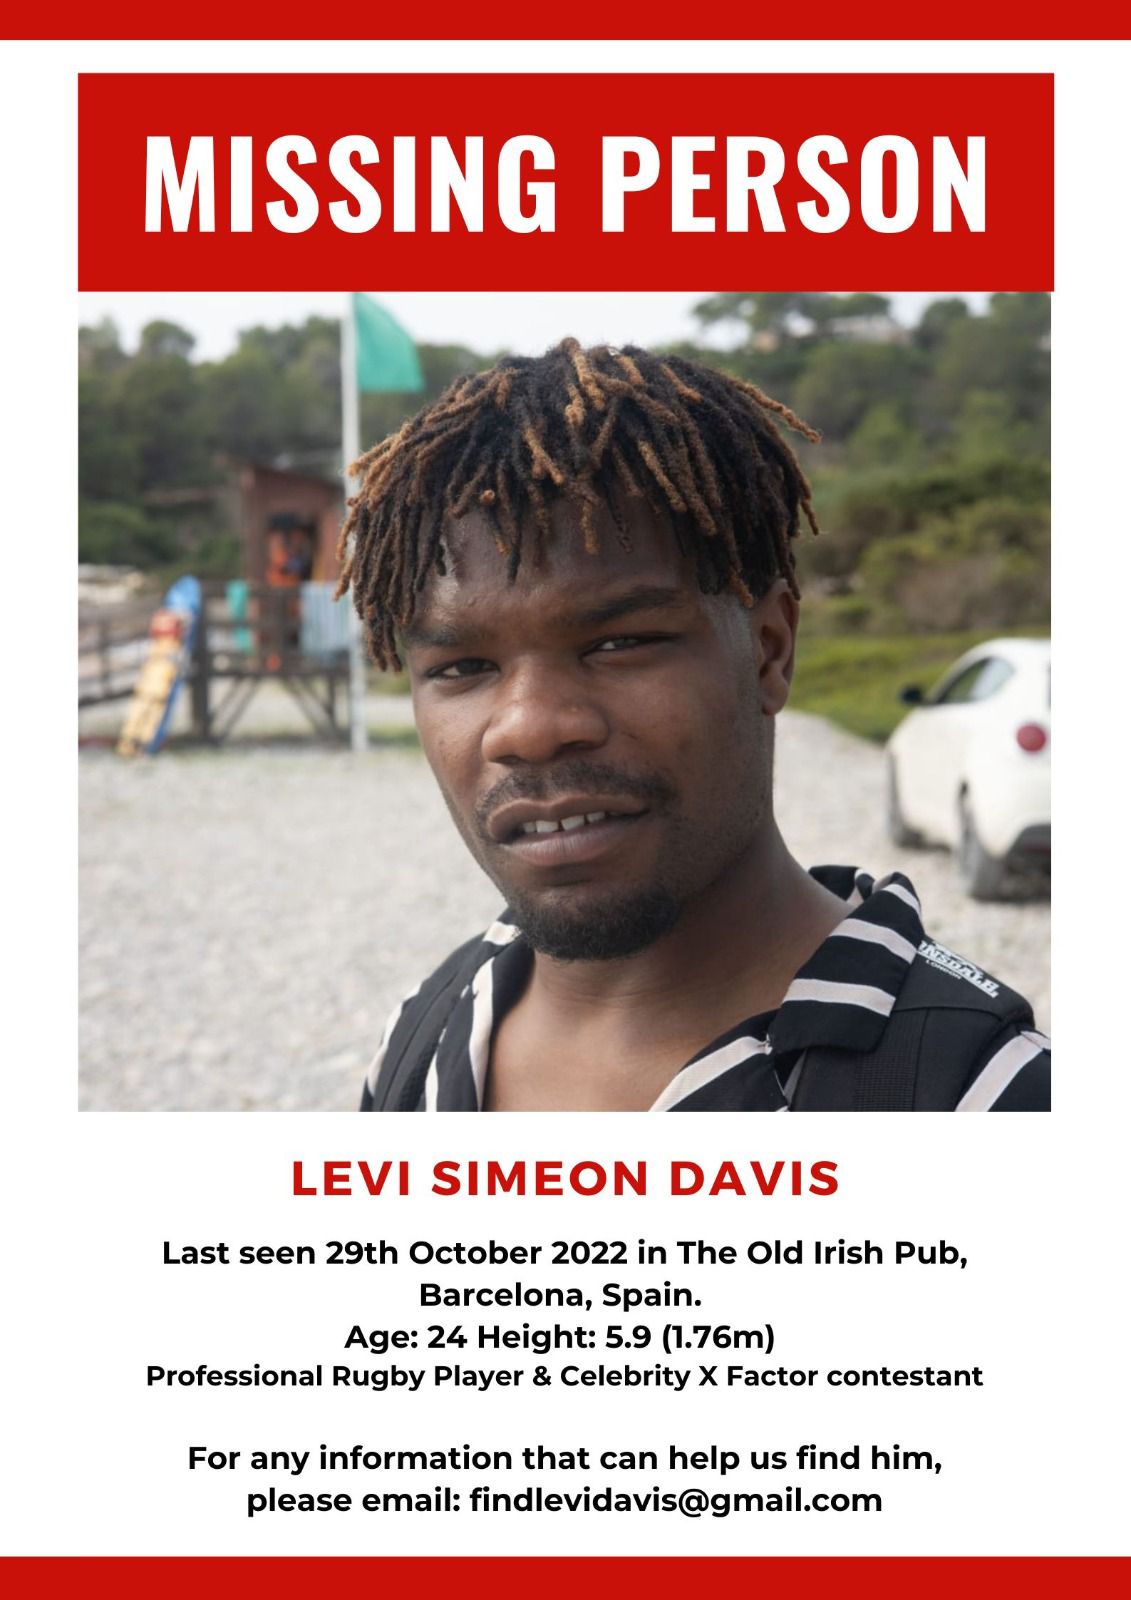 Levi wurde eine Woche nach seinem Verschwinden als vermisst gemeldet